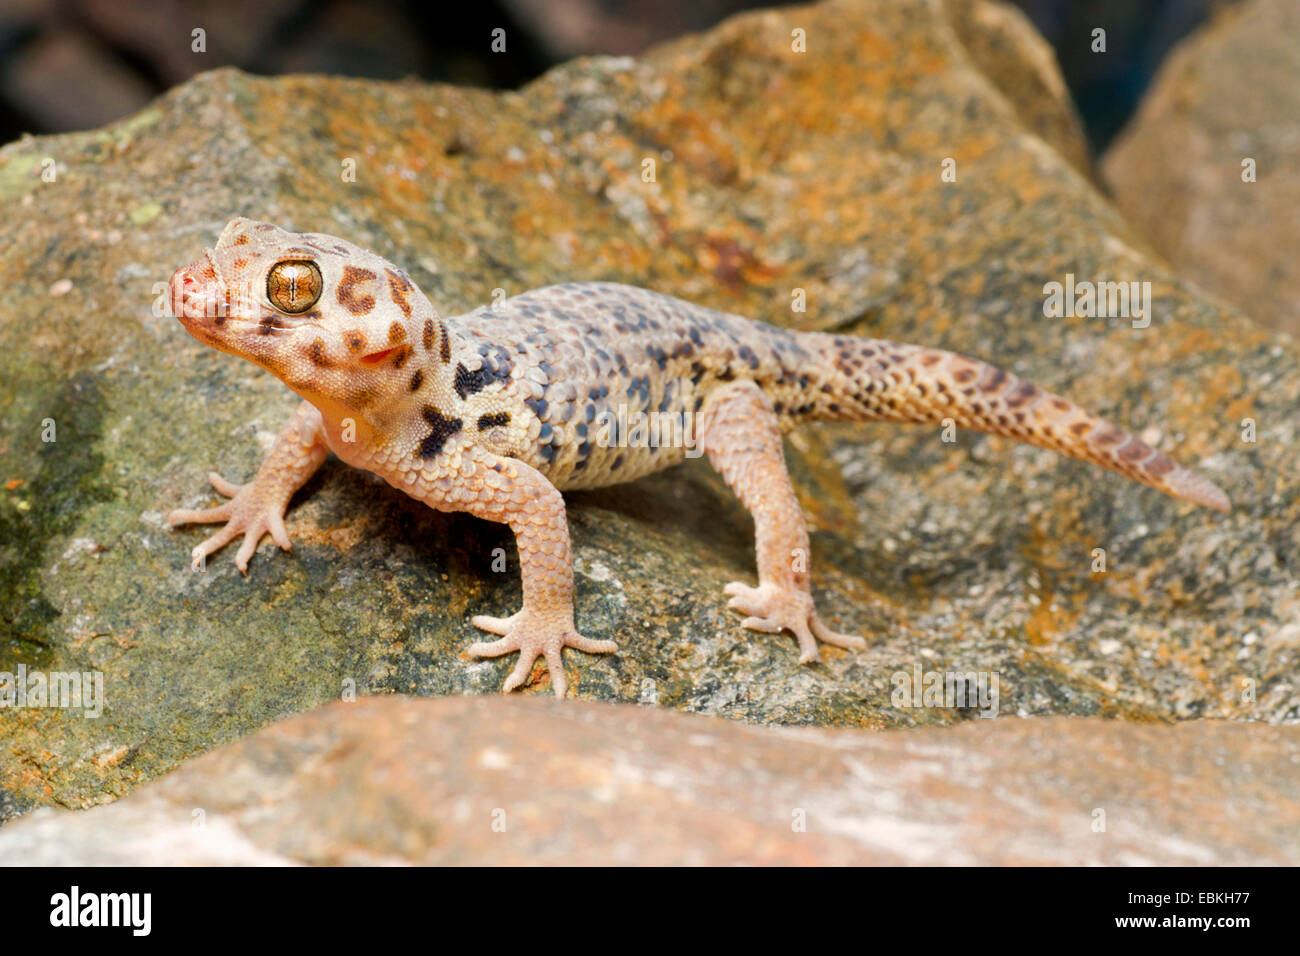 Roborowski's Frog Eyed Gecko (Teratoscincus roborowski), on a stone Stock Photo